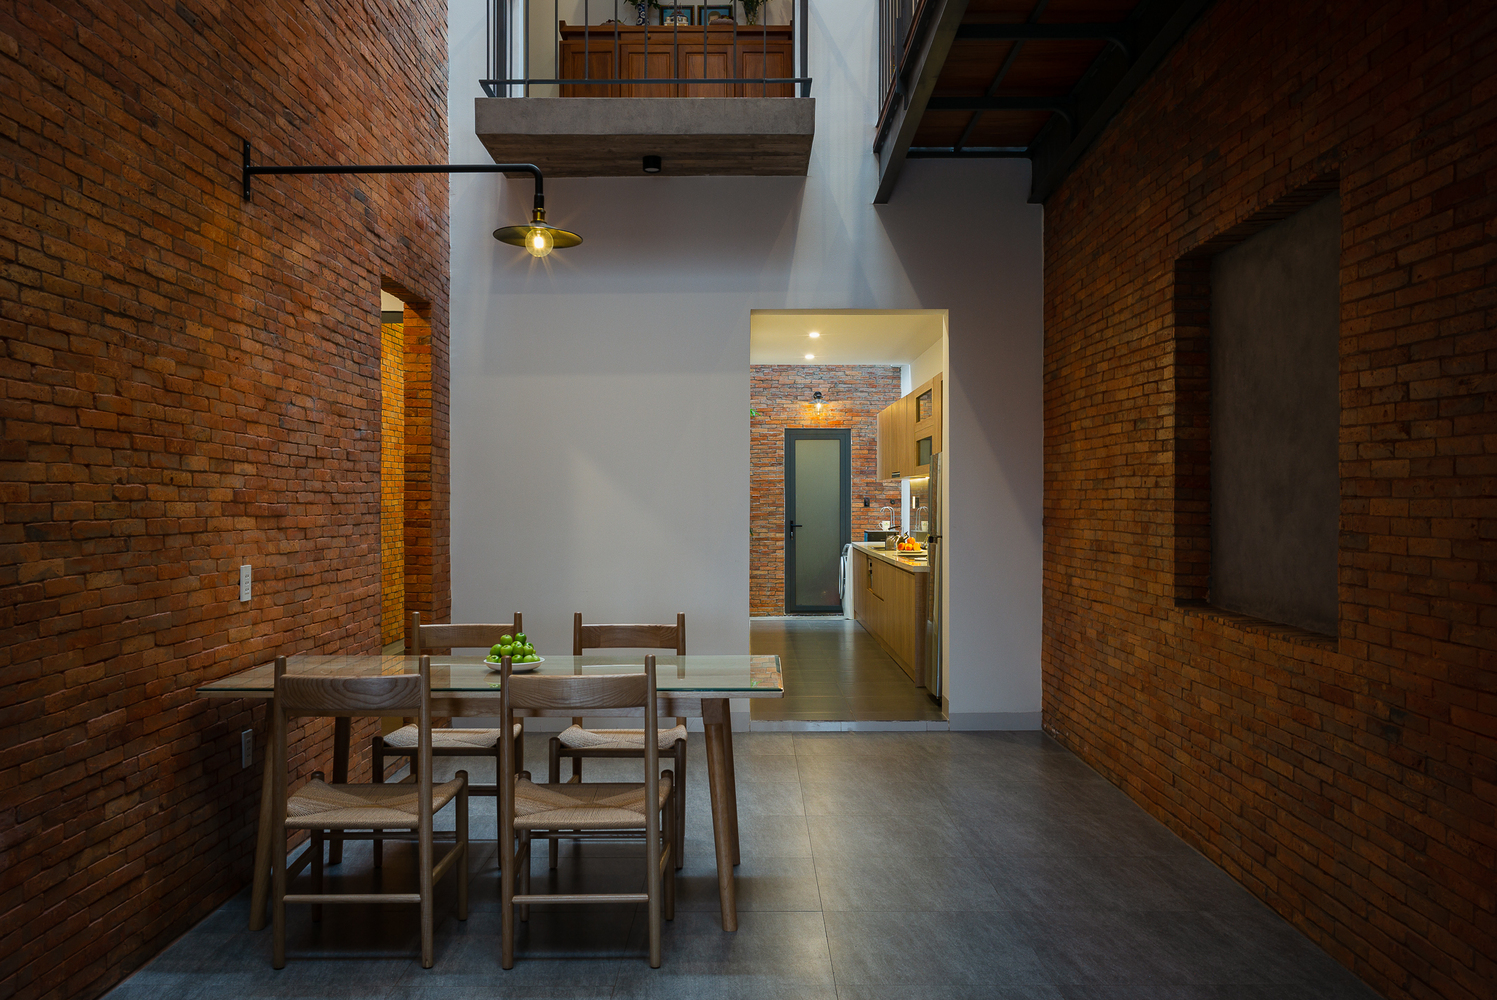 Phòng ăn được bao quanh bởi những bức tường gạch đỏ tạo cảm giác ấm cúng, thân thuộc.